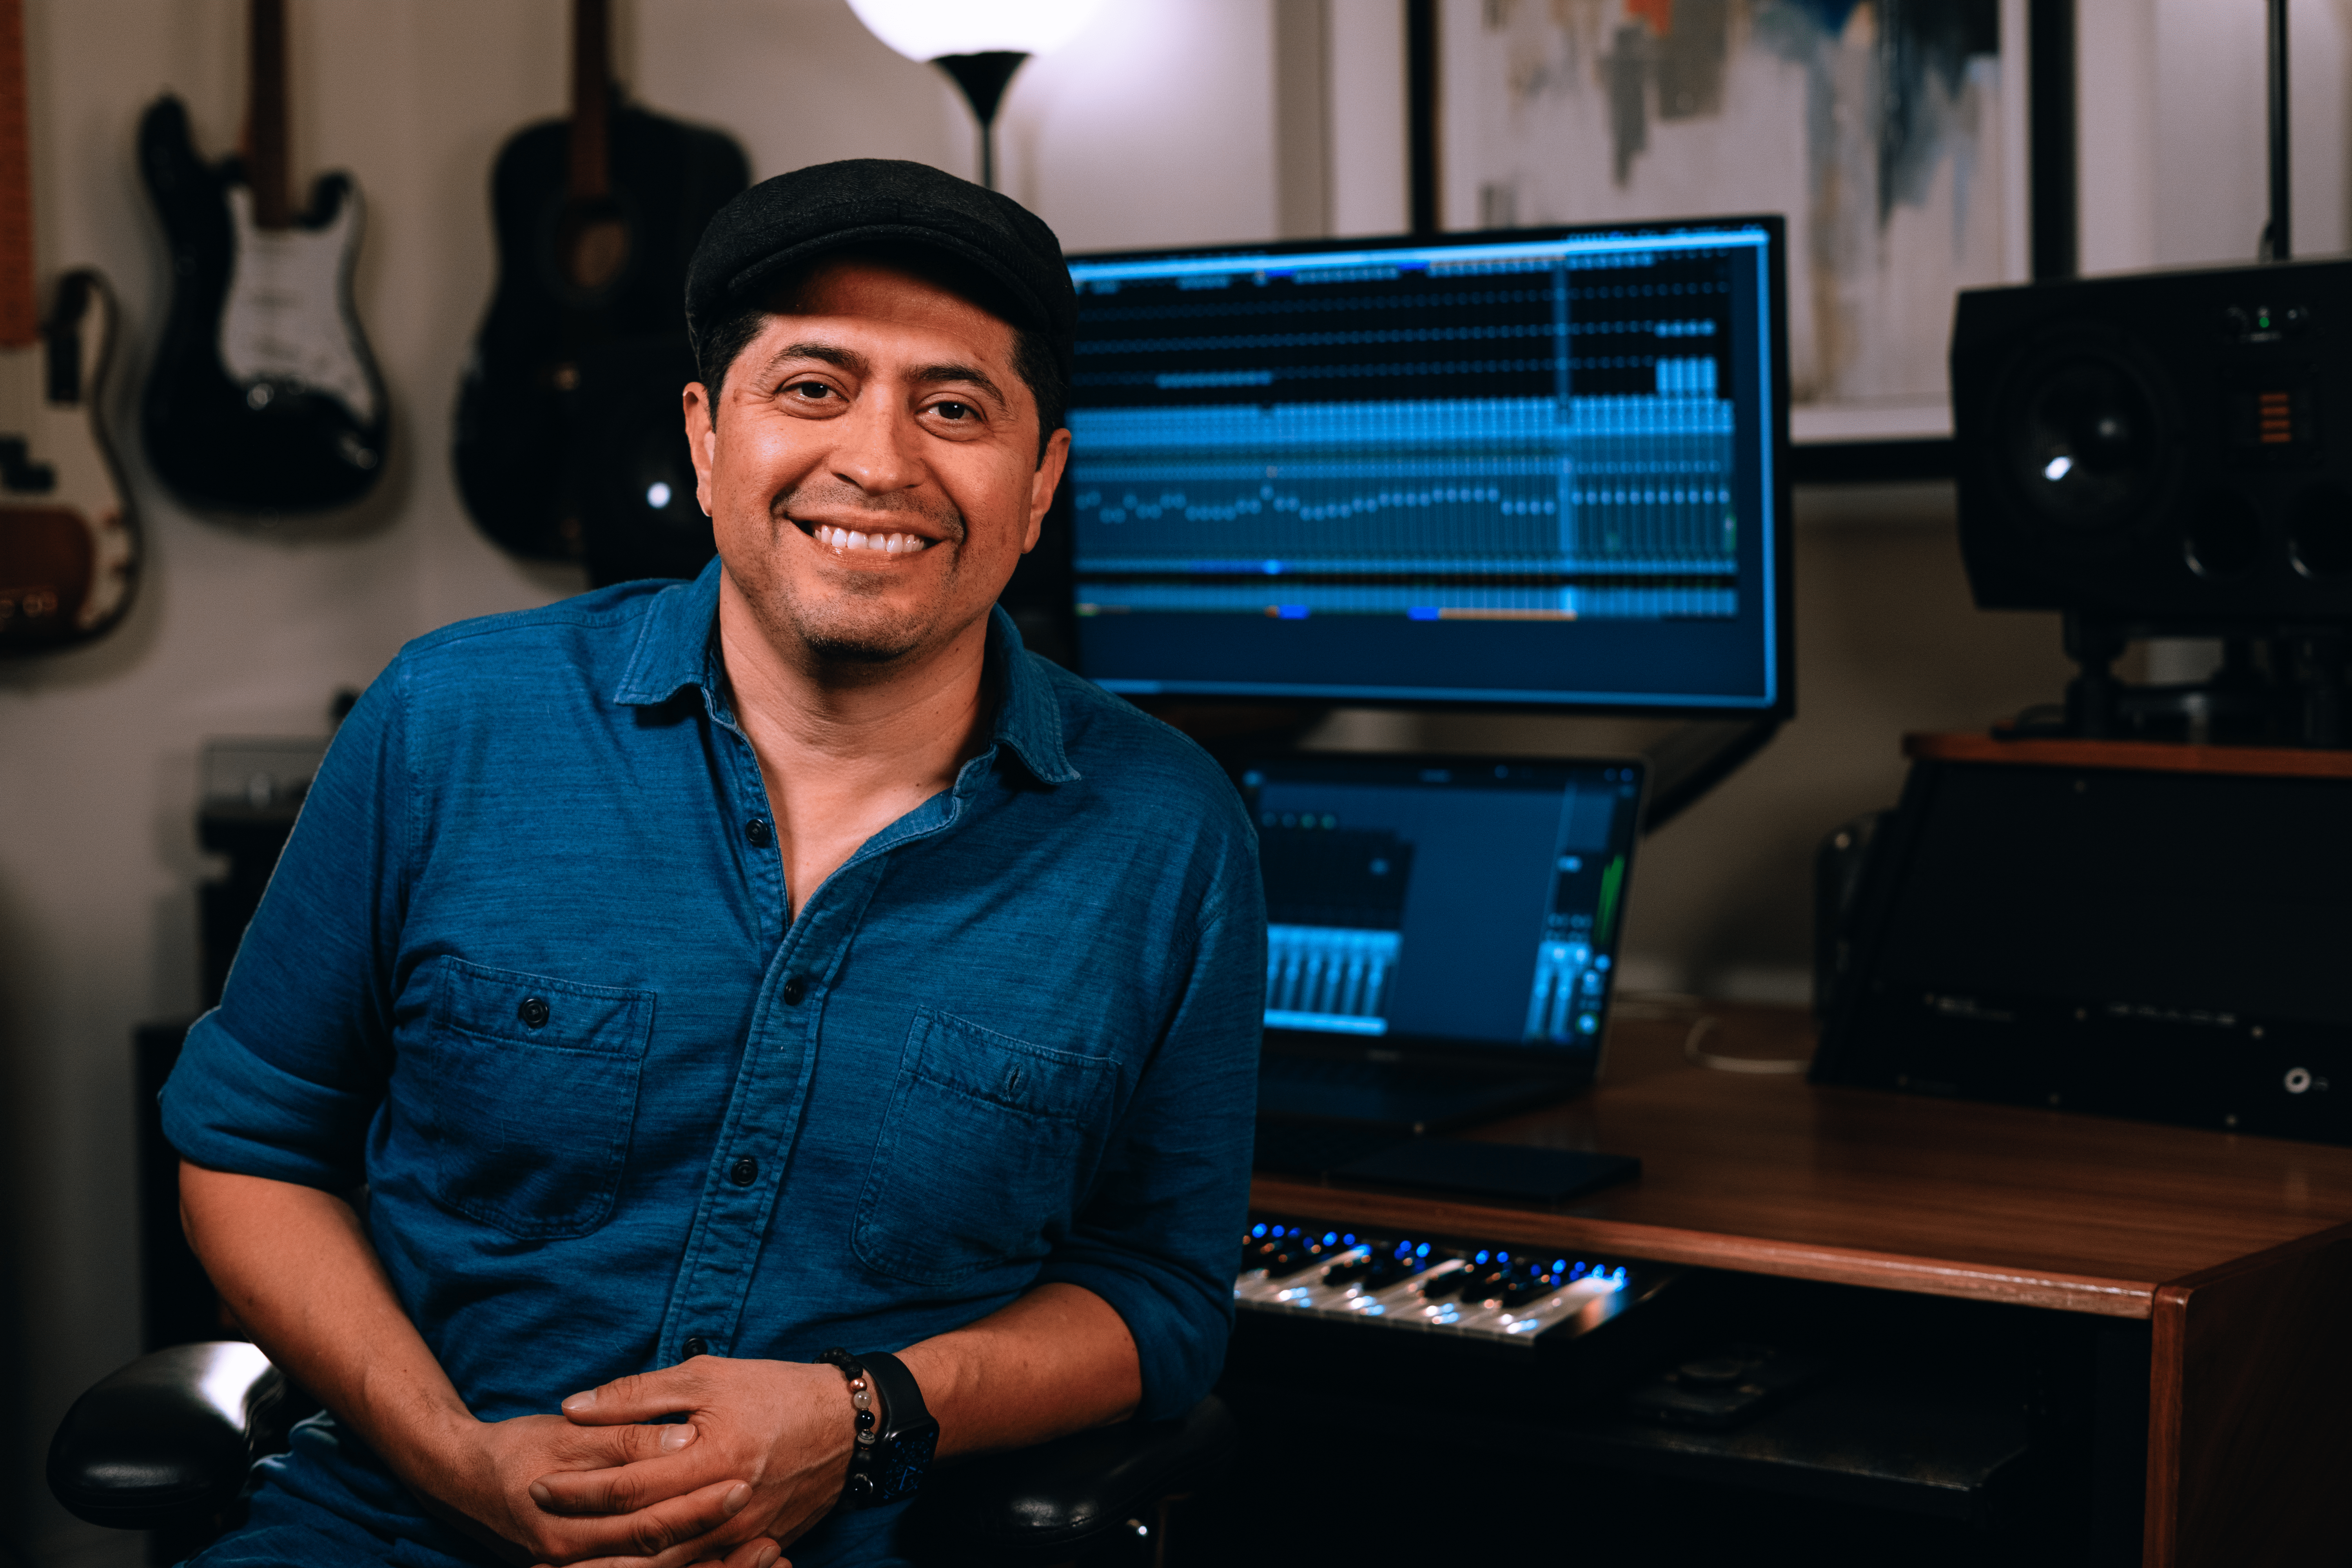 Miguel Soltero ซึ่งเป็นนักแต่งเพลง โปรดิวเซอร์ และวิศวกร นั่งยิ้มอยู่ในสตูดิโอของตนโดยมีกีตาร์เป็นฉากหลัง